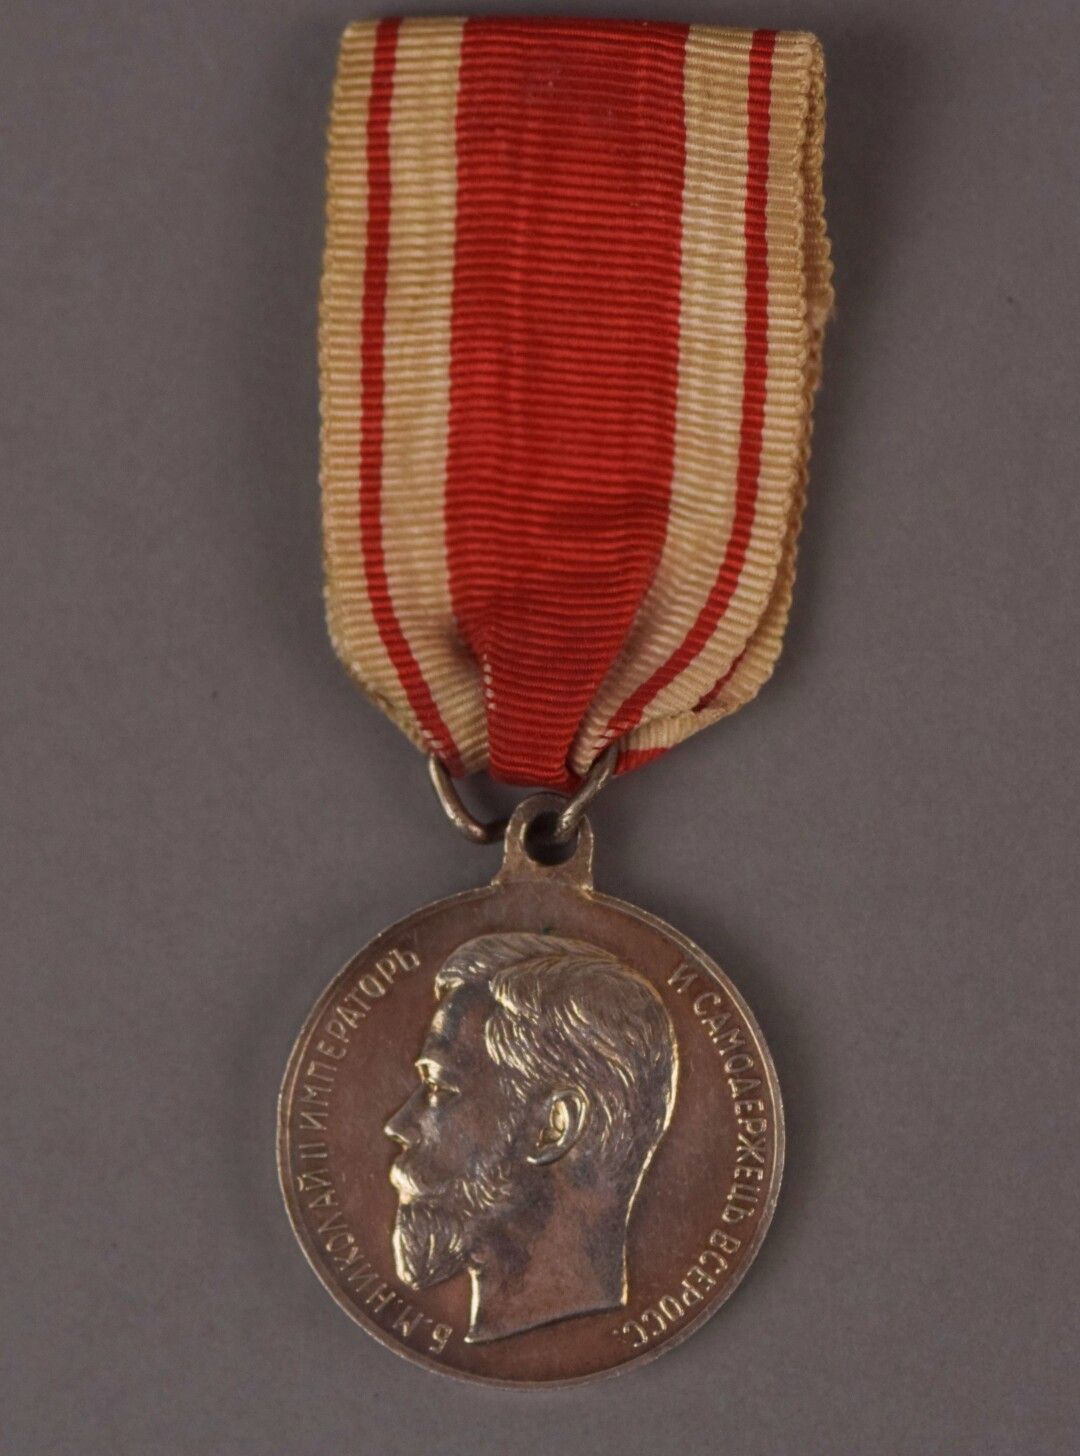 Null [MILITARIA]

RUSSIE

Médaille "pour le Zèle" en argent et ruban.